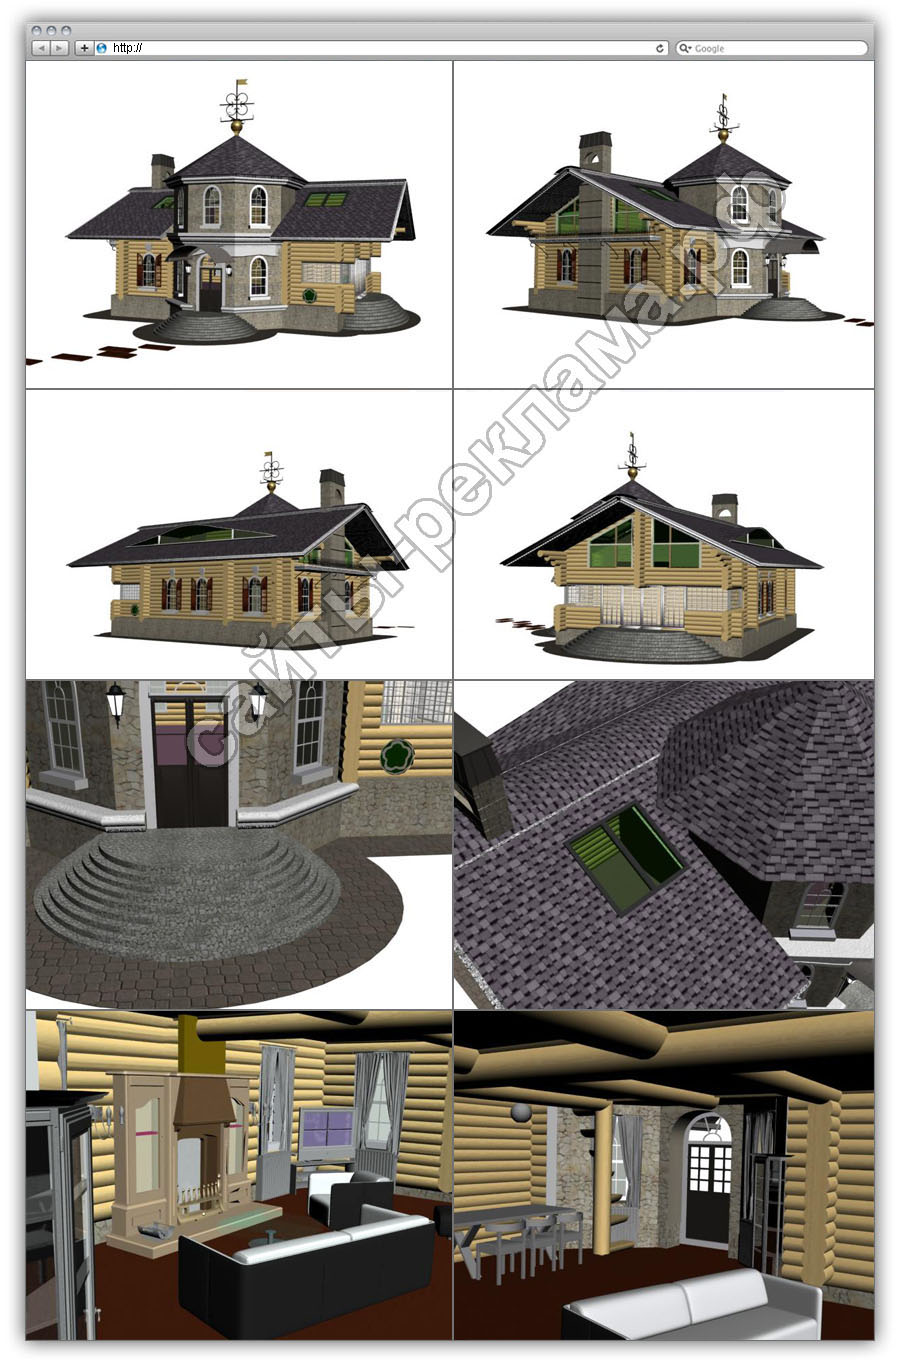 Трёхмерная архитектурная модель дома